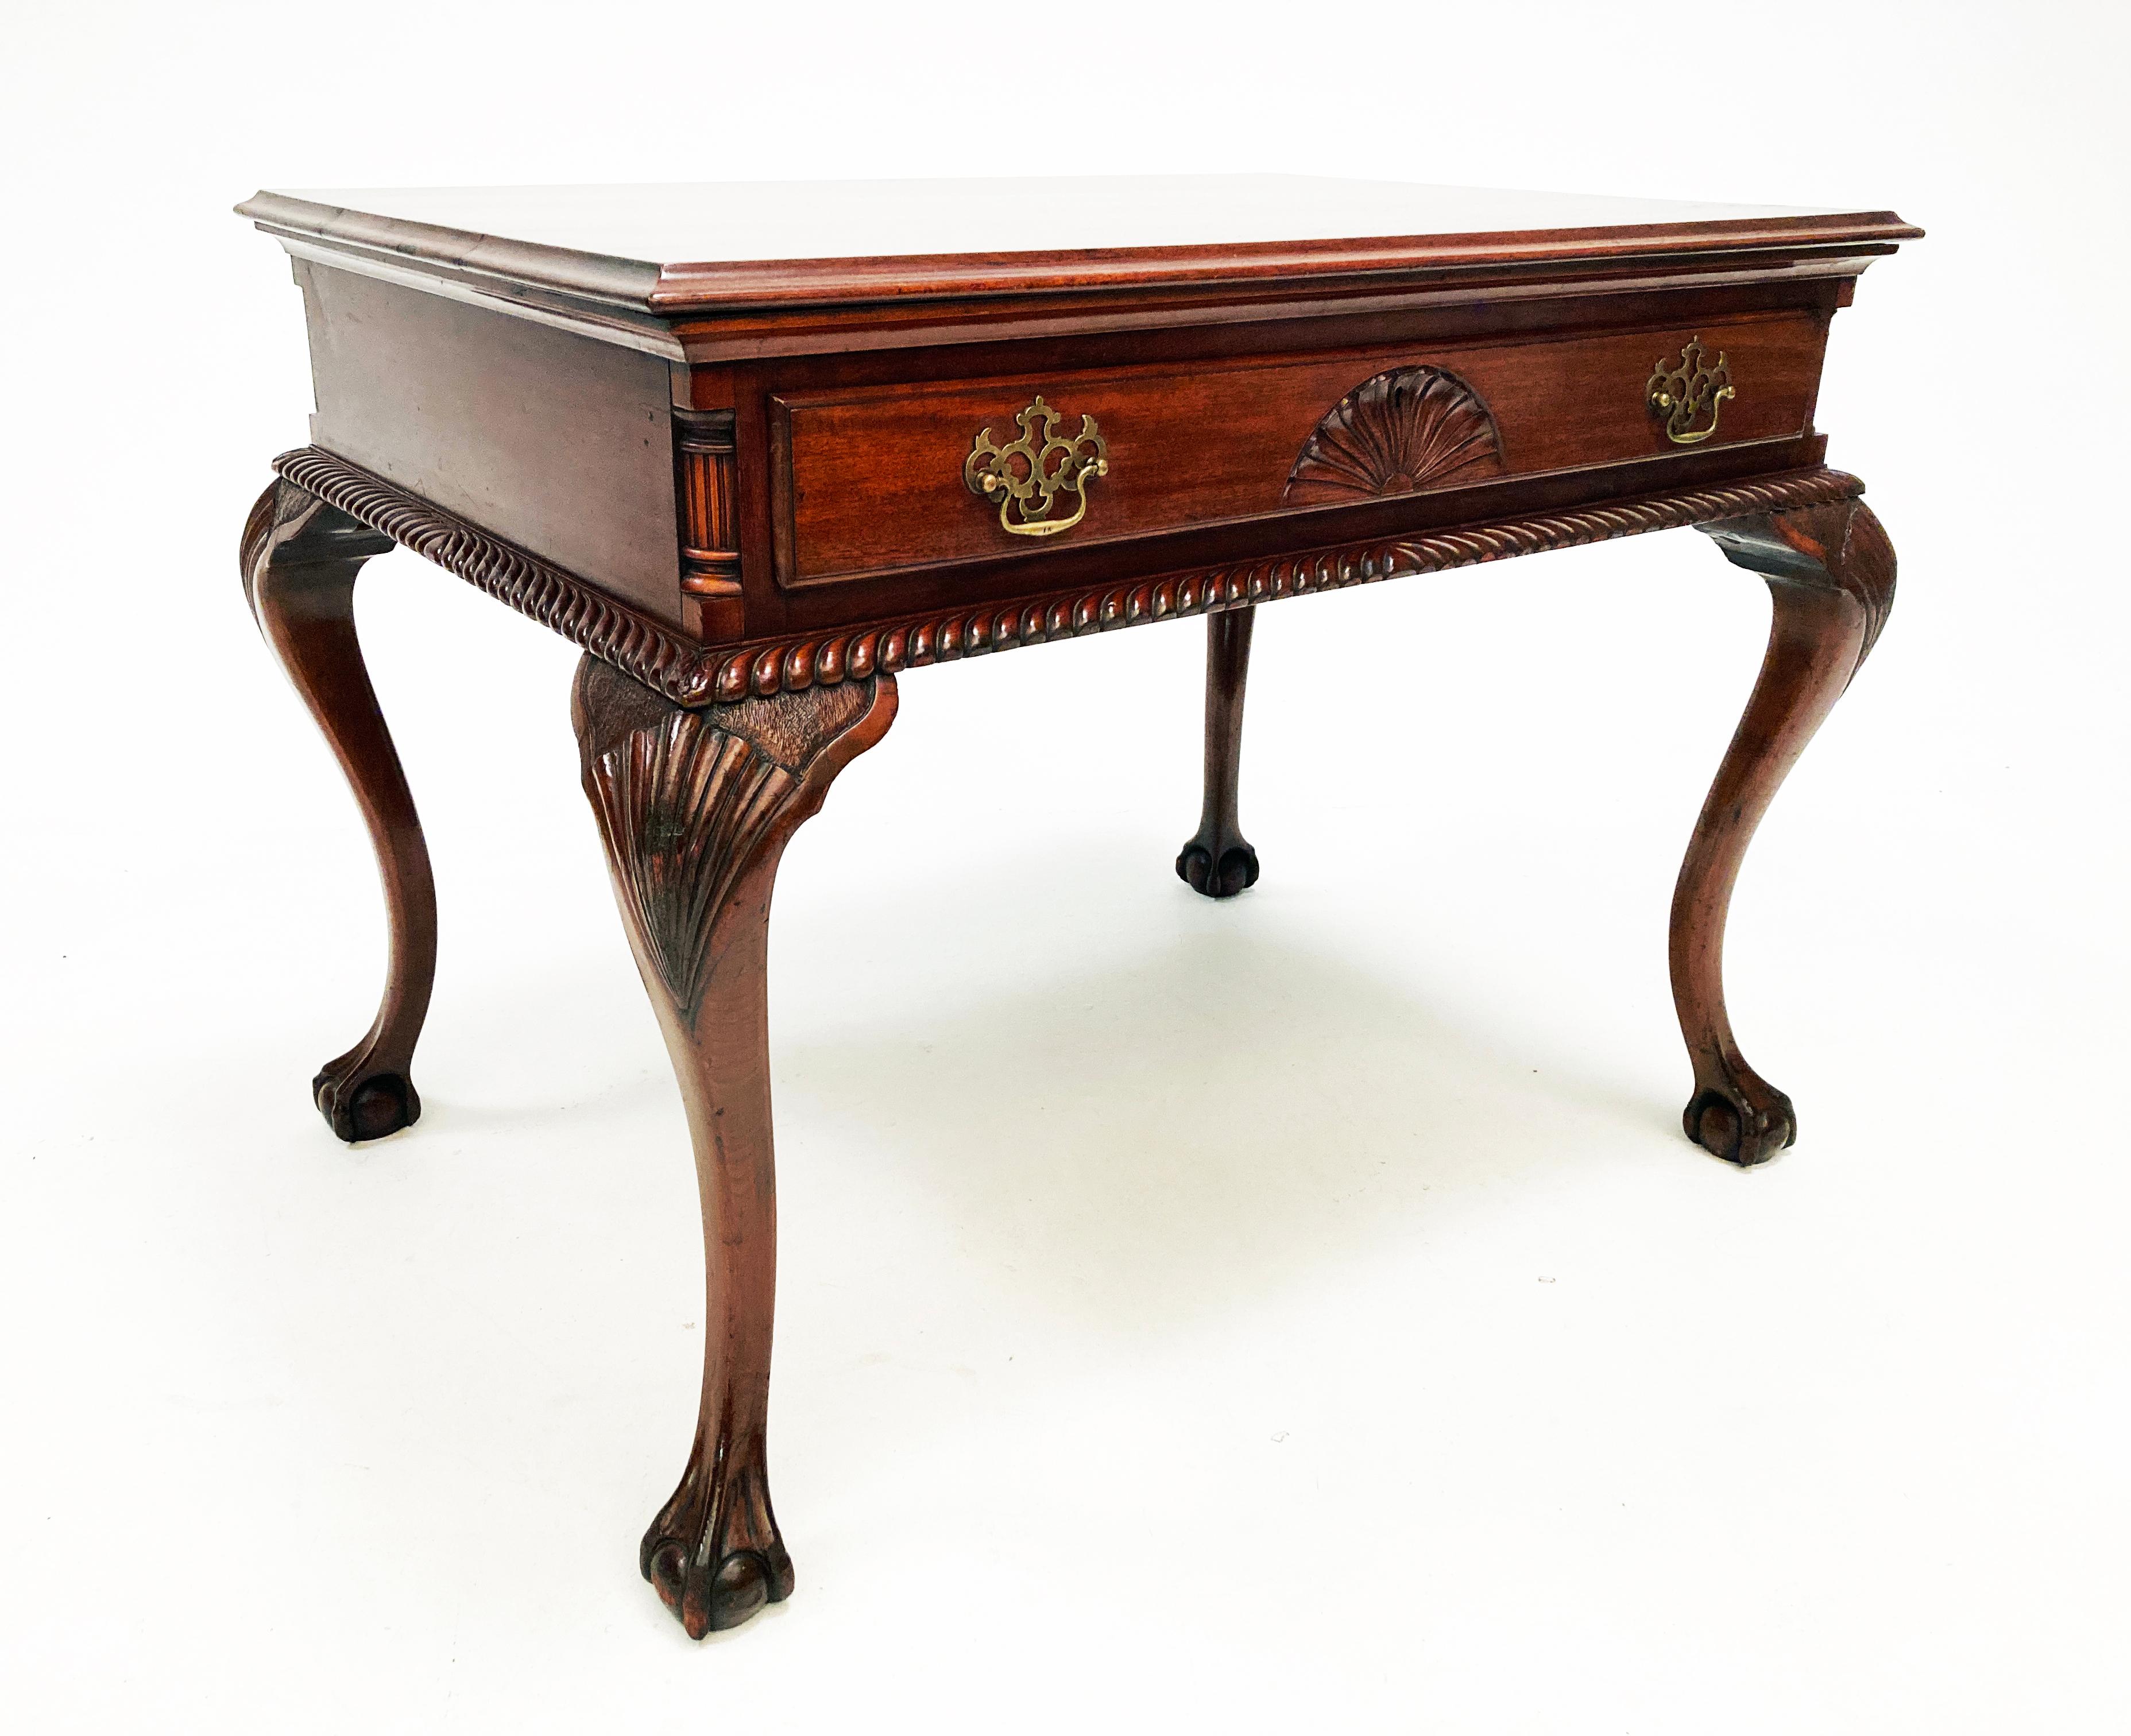 Pour l'œil averti, cette table/bureau est un exemple étonnant du magnifique design Chippendale anglais avec une qualité d'exécution exemplaire du 19ème siècle. Des pieds cabriole ornementés et sculptés à la main aux détails exquis de la plinthe, en